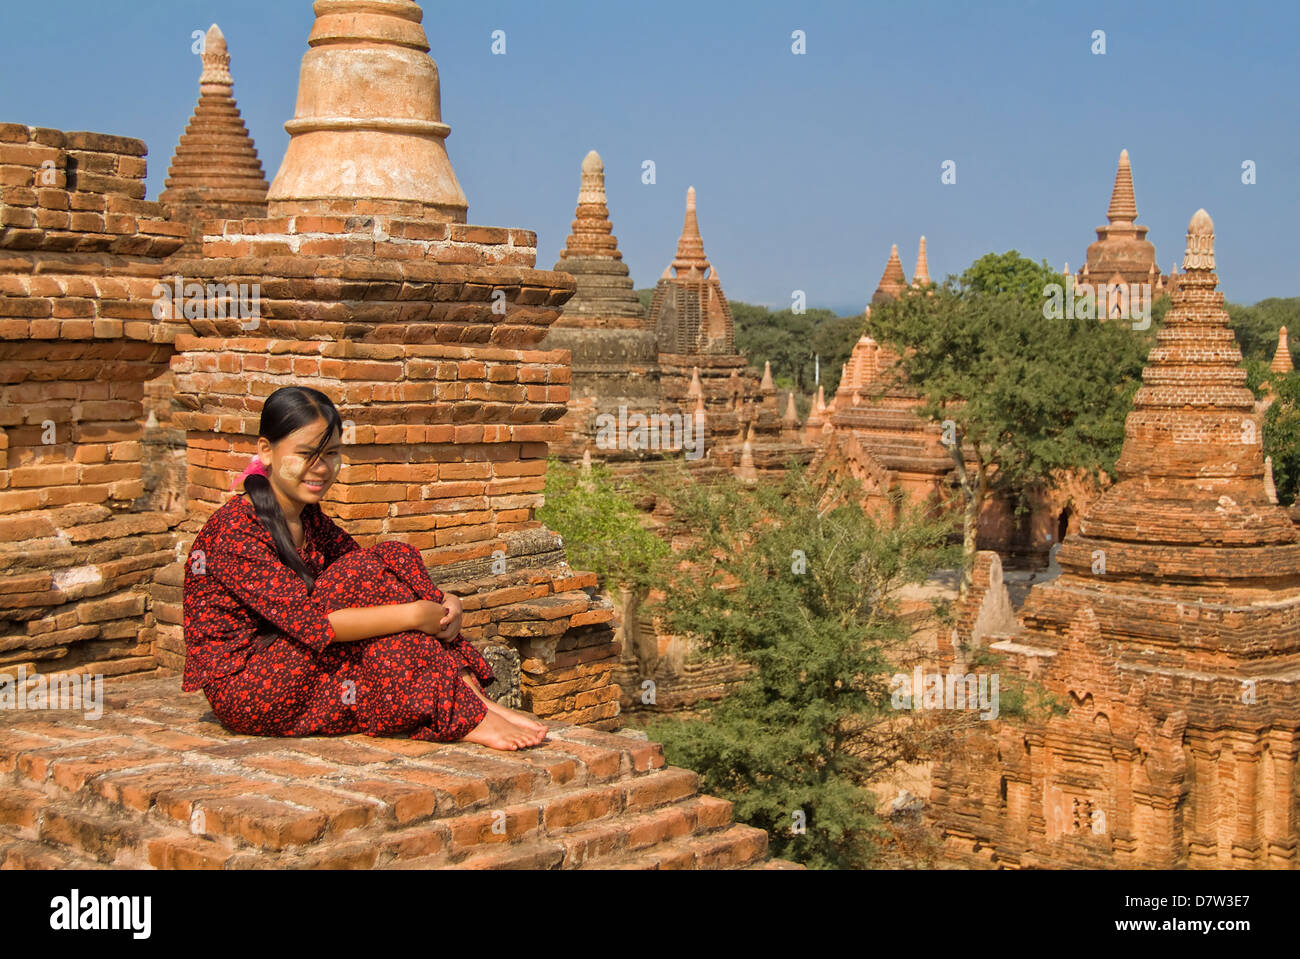 Jeune femme birmane dans une robe rouge assis sur le toit d'un temple, Bagan (Pagan), la Birmanie Banque D'Images